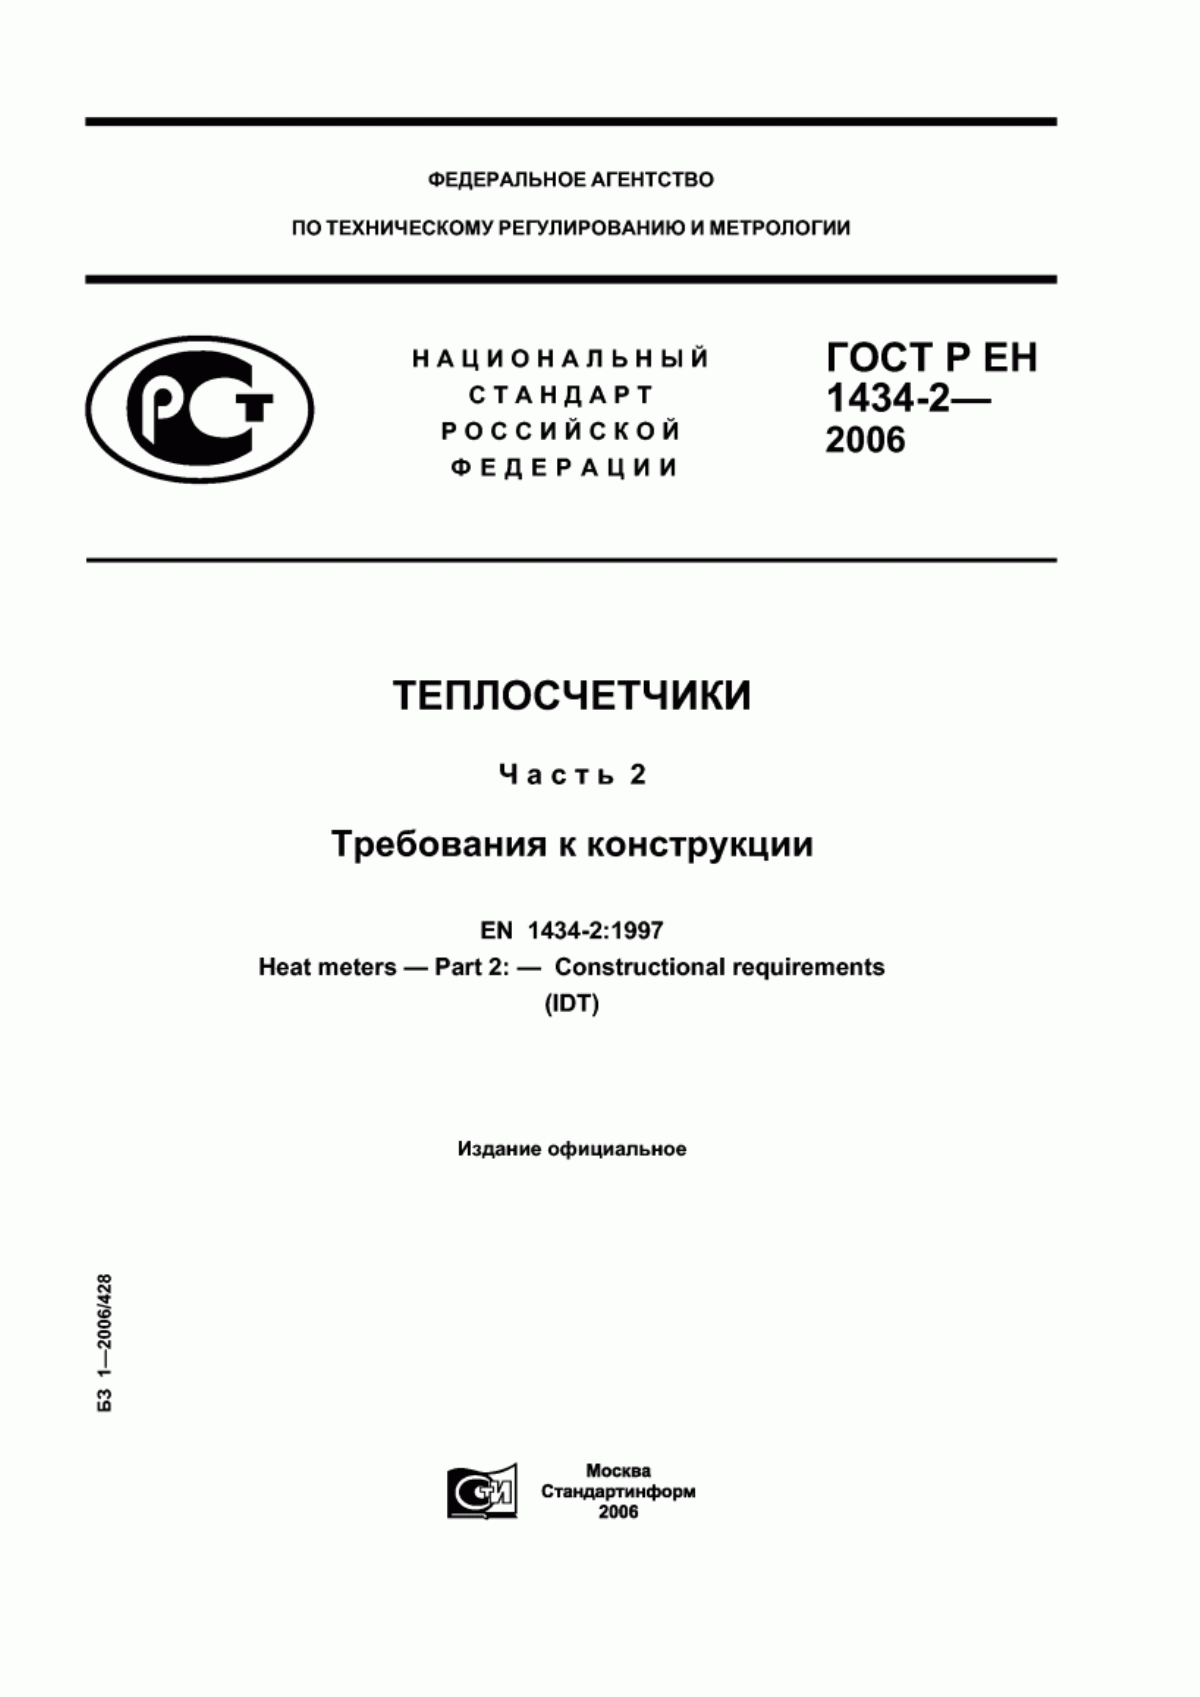 ГОСТ Р ЕН 1434-2-2006 Теплосчетчики. Часть 2. Требования к конструкции